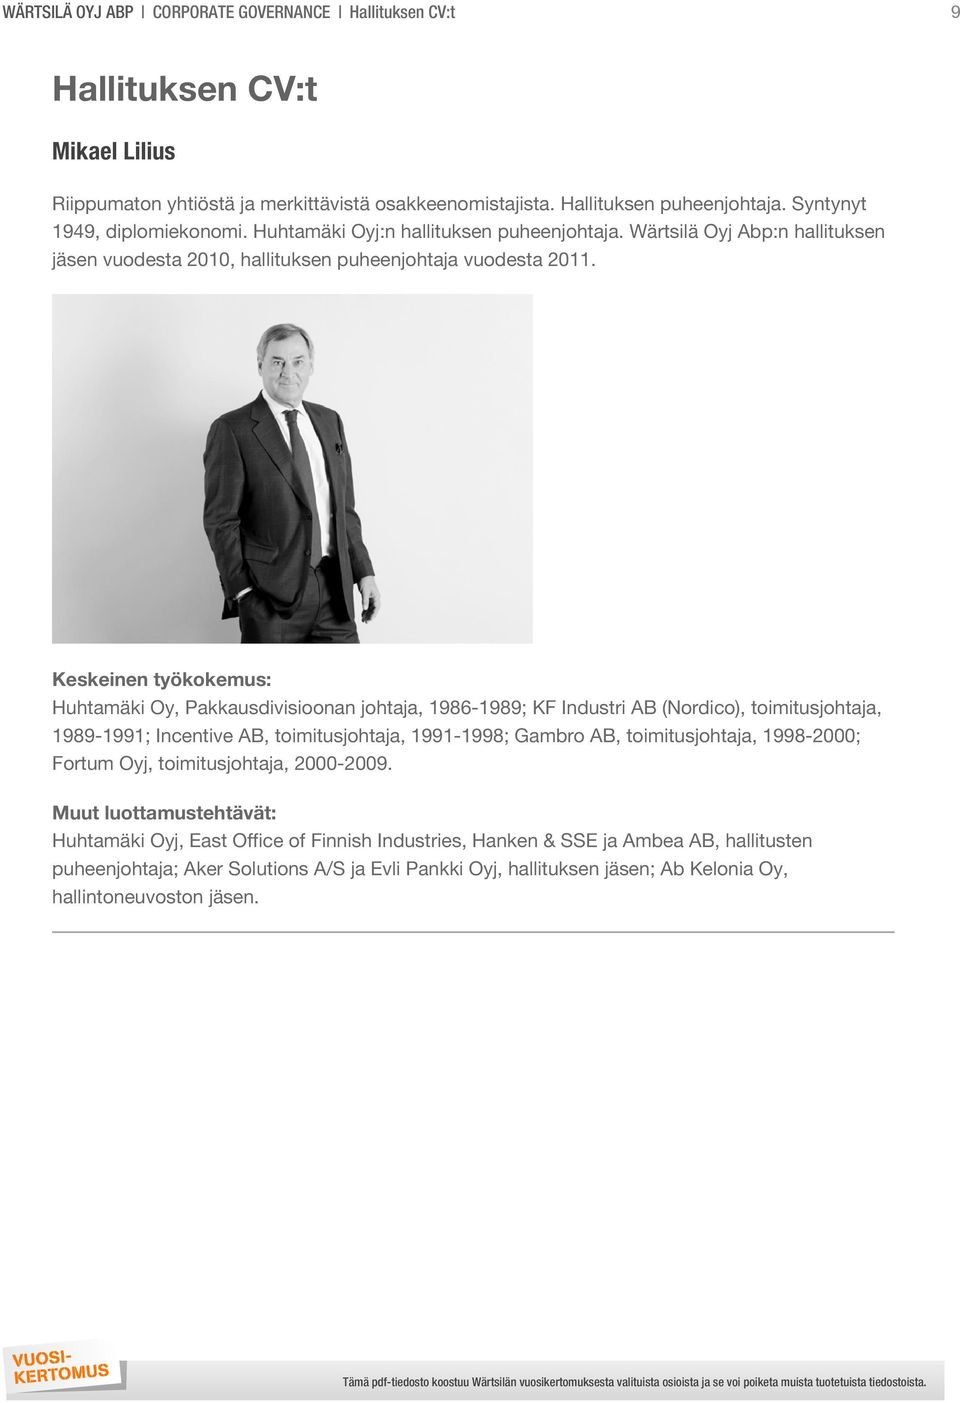 Wärtsilä Oyj Abp:n hallituksen jäsen vuodesta 2010, hallituksen puheenjohtaja vuodesta 2011.